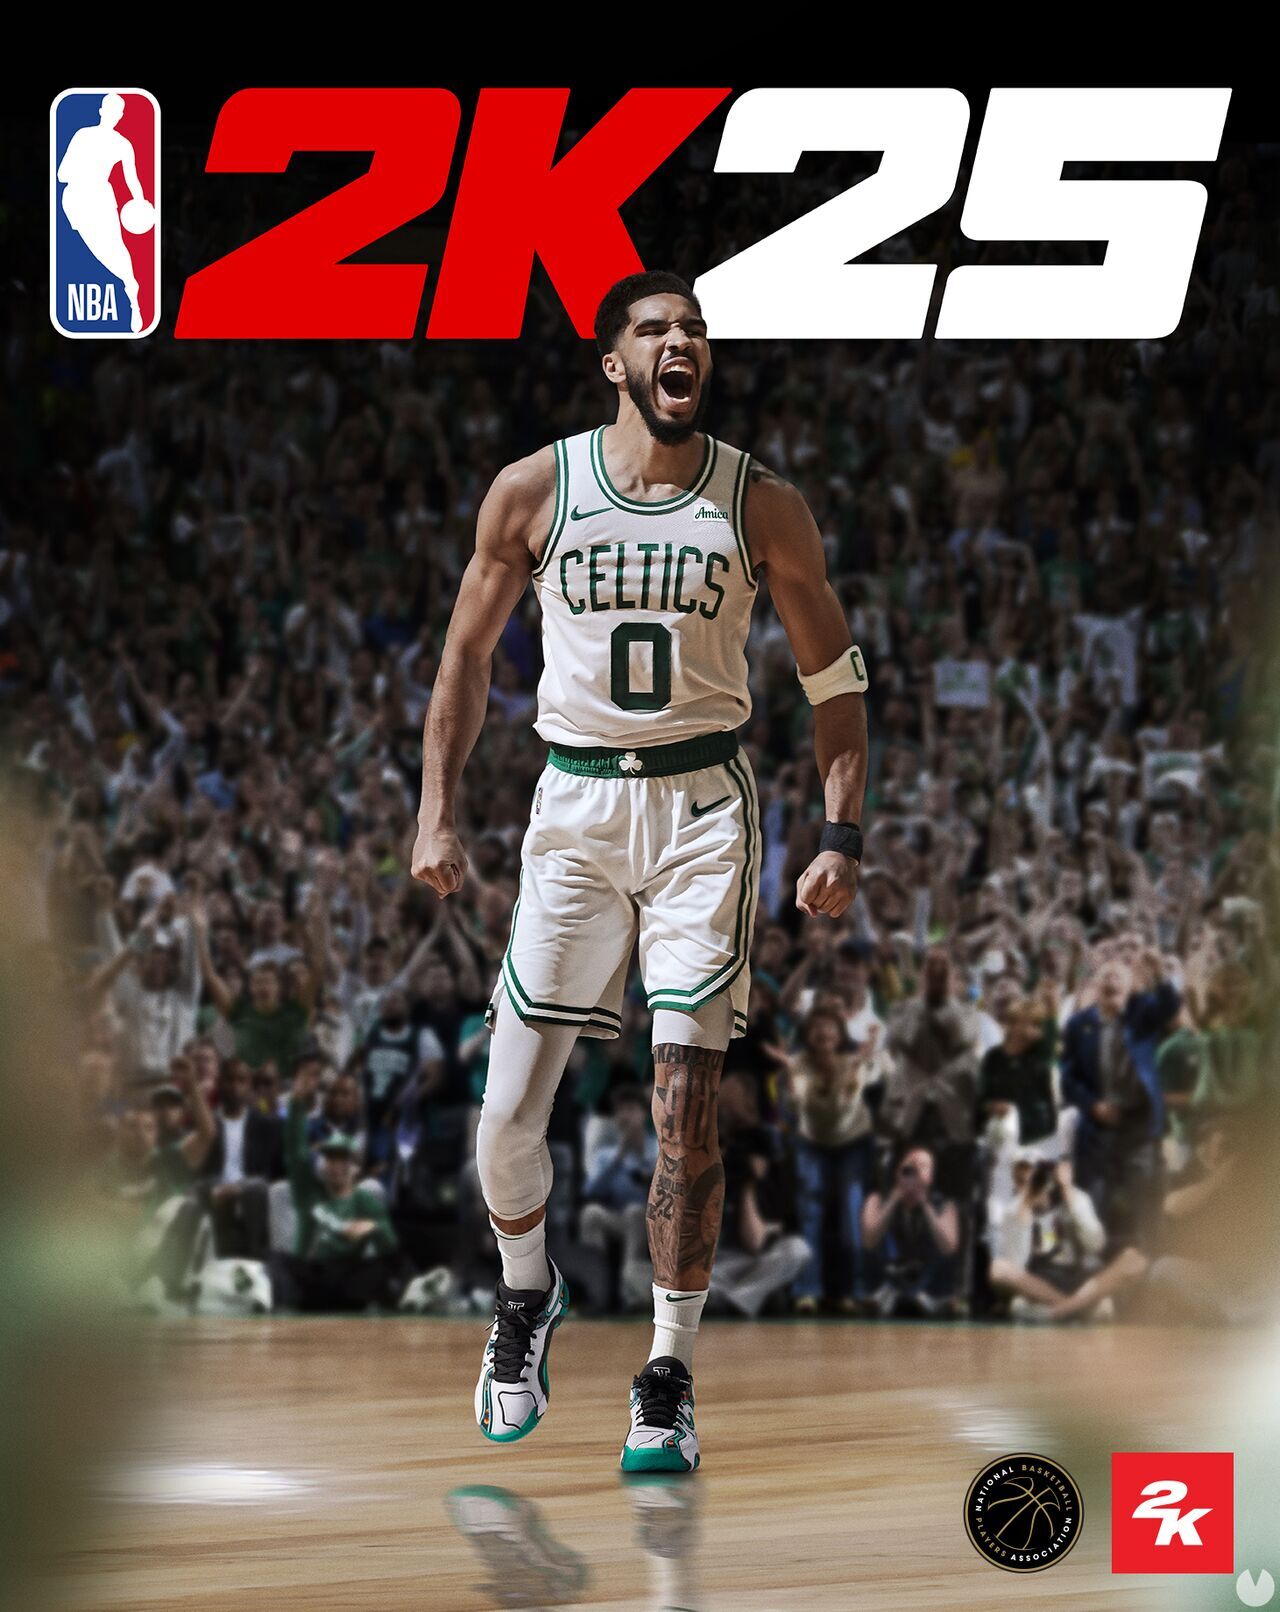 NBA 2K25 ya tiene fecha de lanzamiento, primeras detalles y estrellas de portada confirmadas